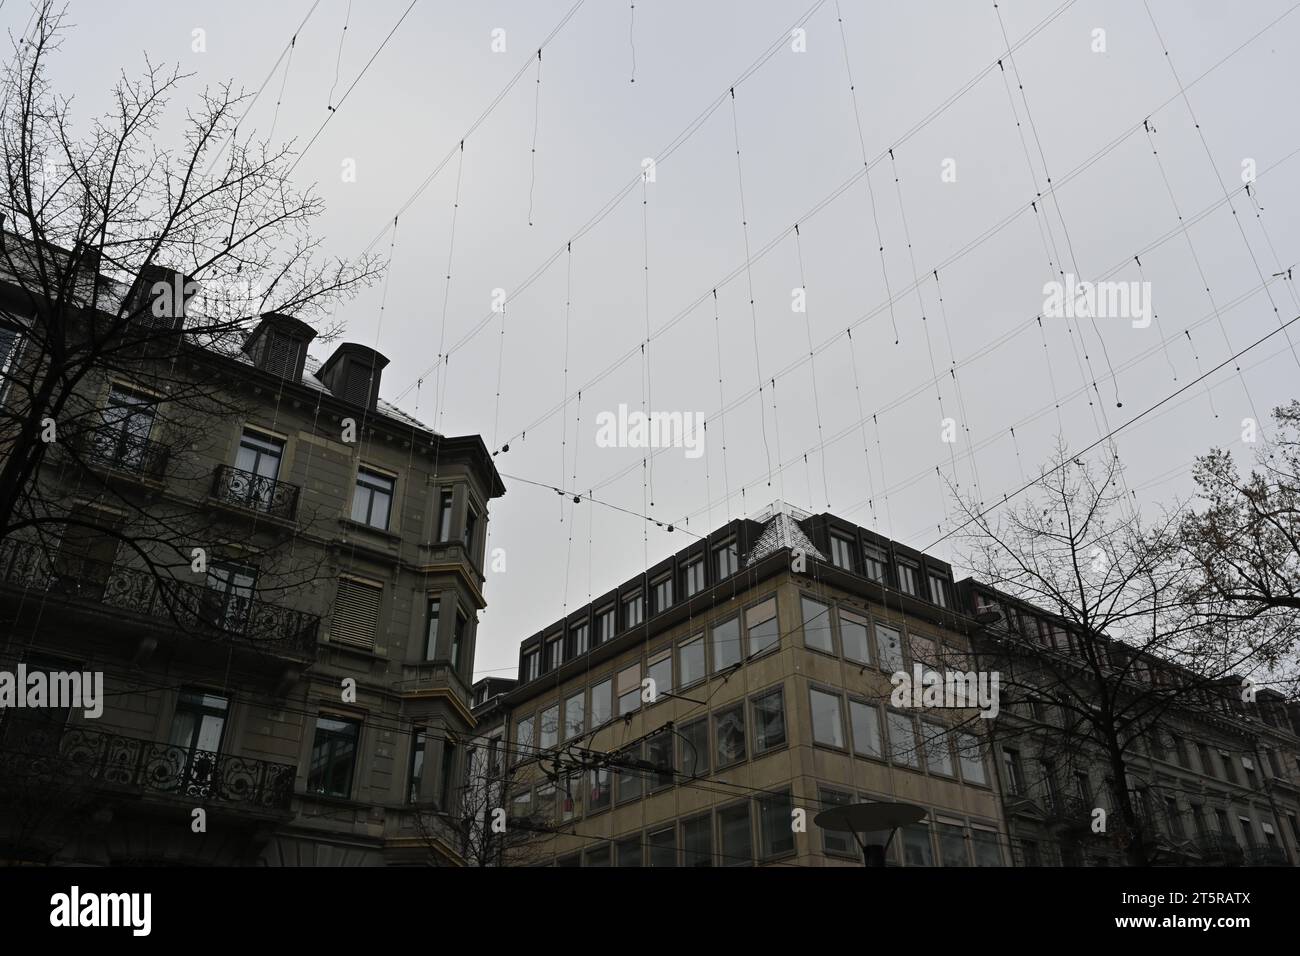 Éclairage extérieur de Noël dans le centre-ville de Zurich, Suisse. Les chaînes avec des lumières sont suspendues au-dessus des rues parmi les bâtiments. Banque D'Images